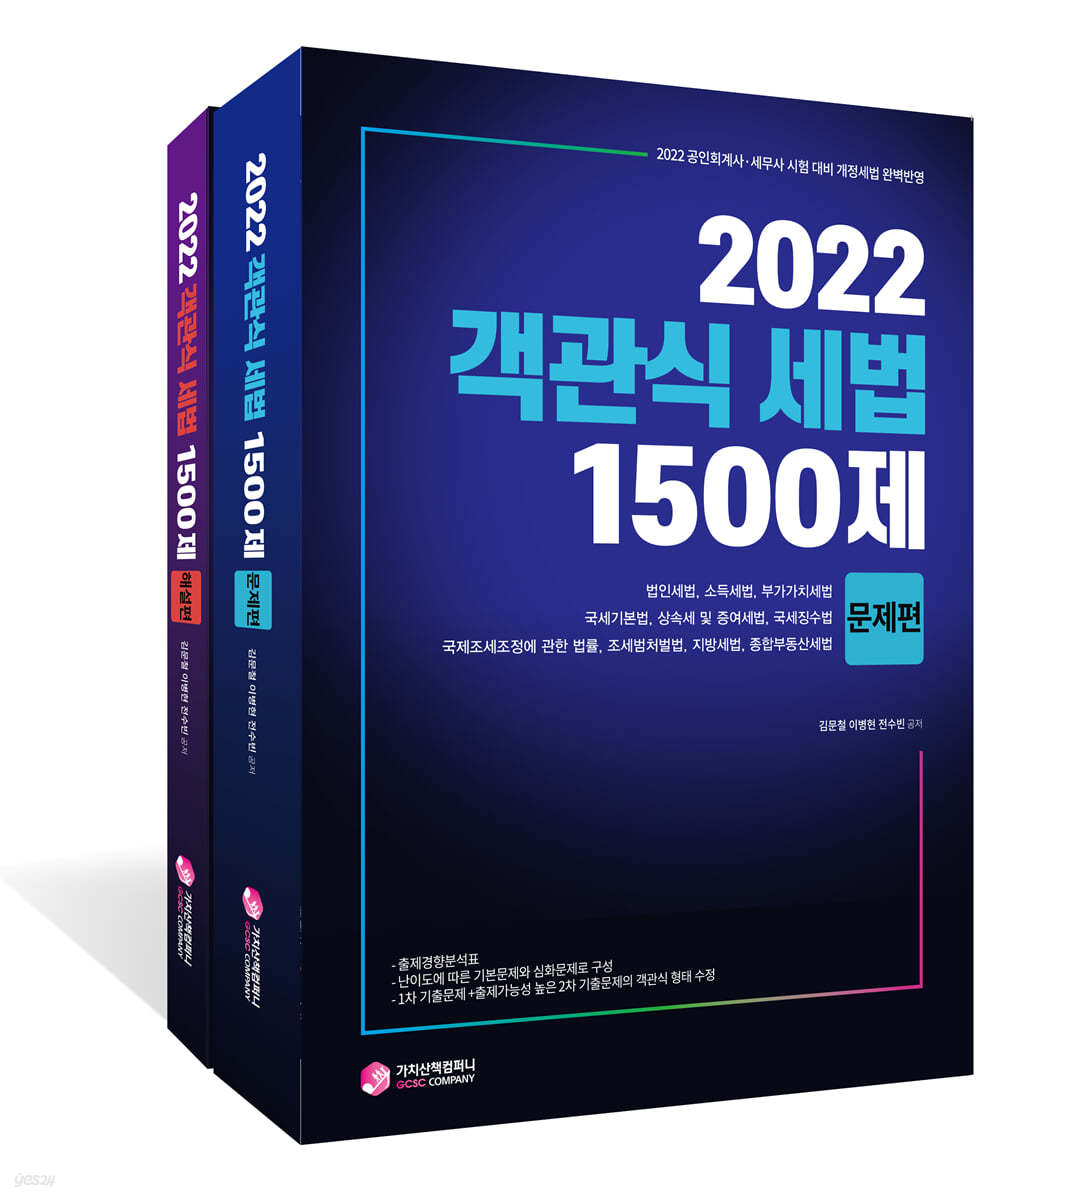 2022 객관식 세법 1500제